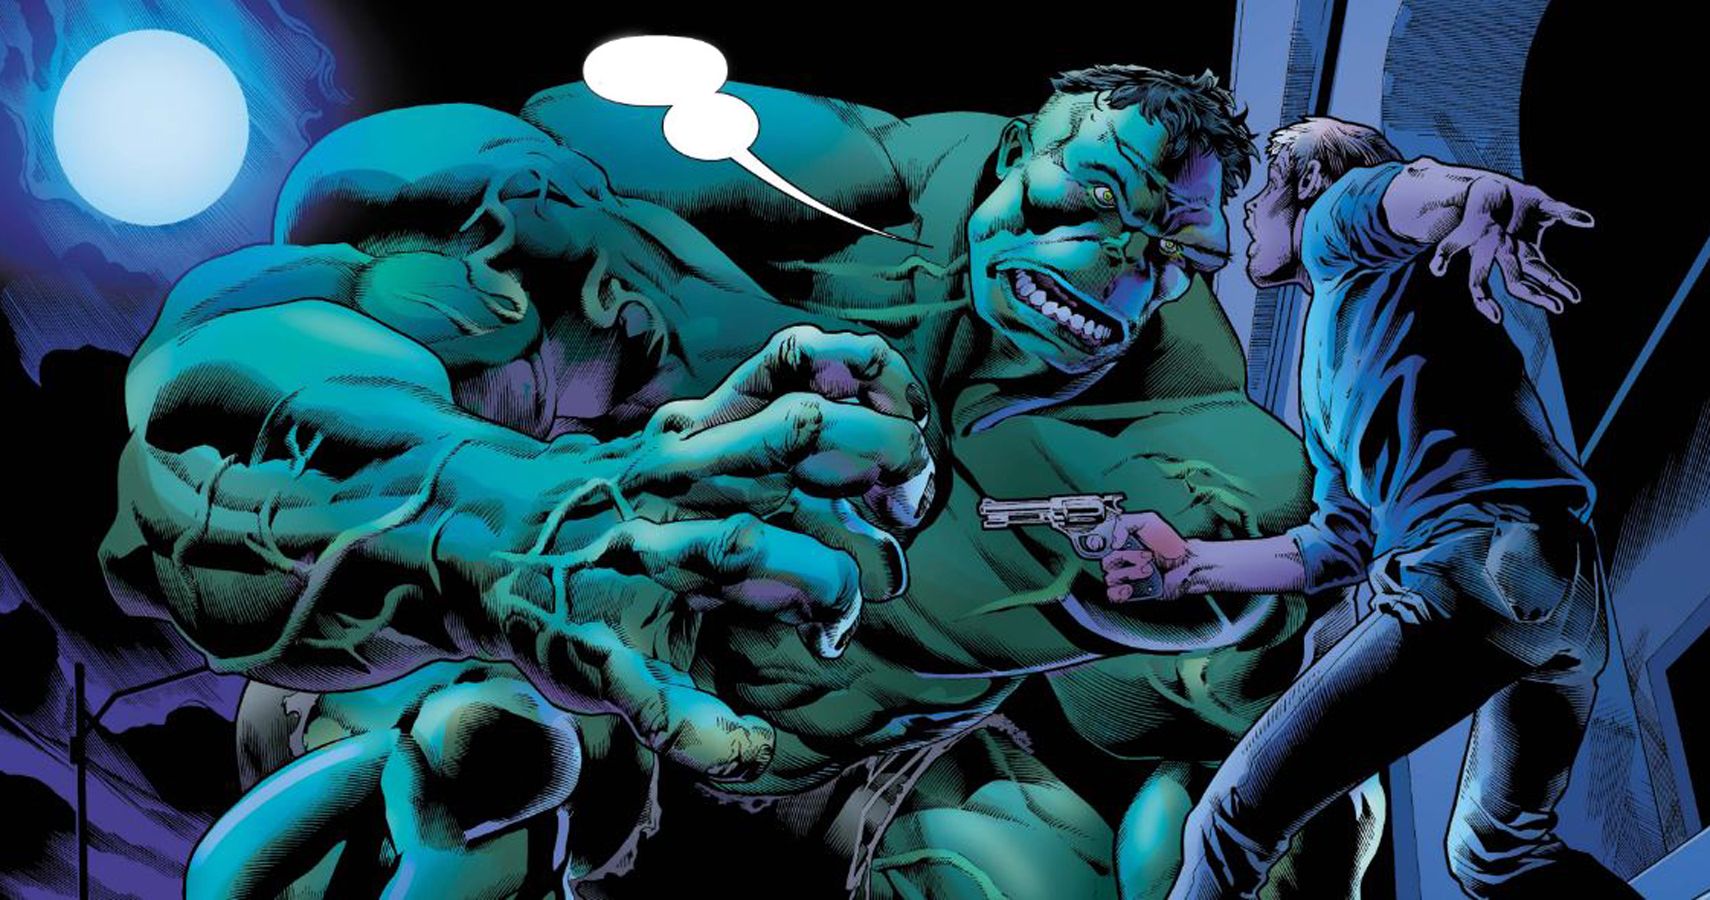 Immortal Hulk talks